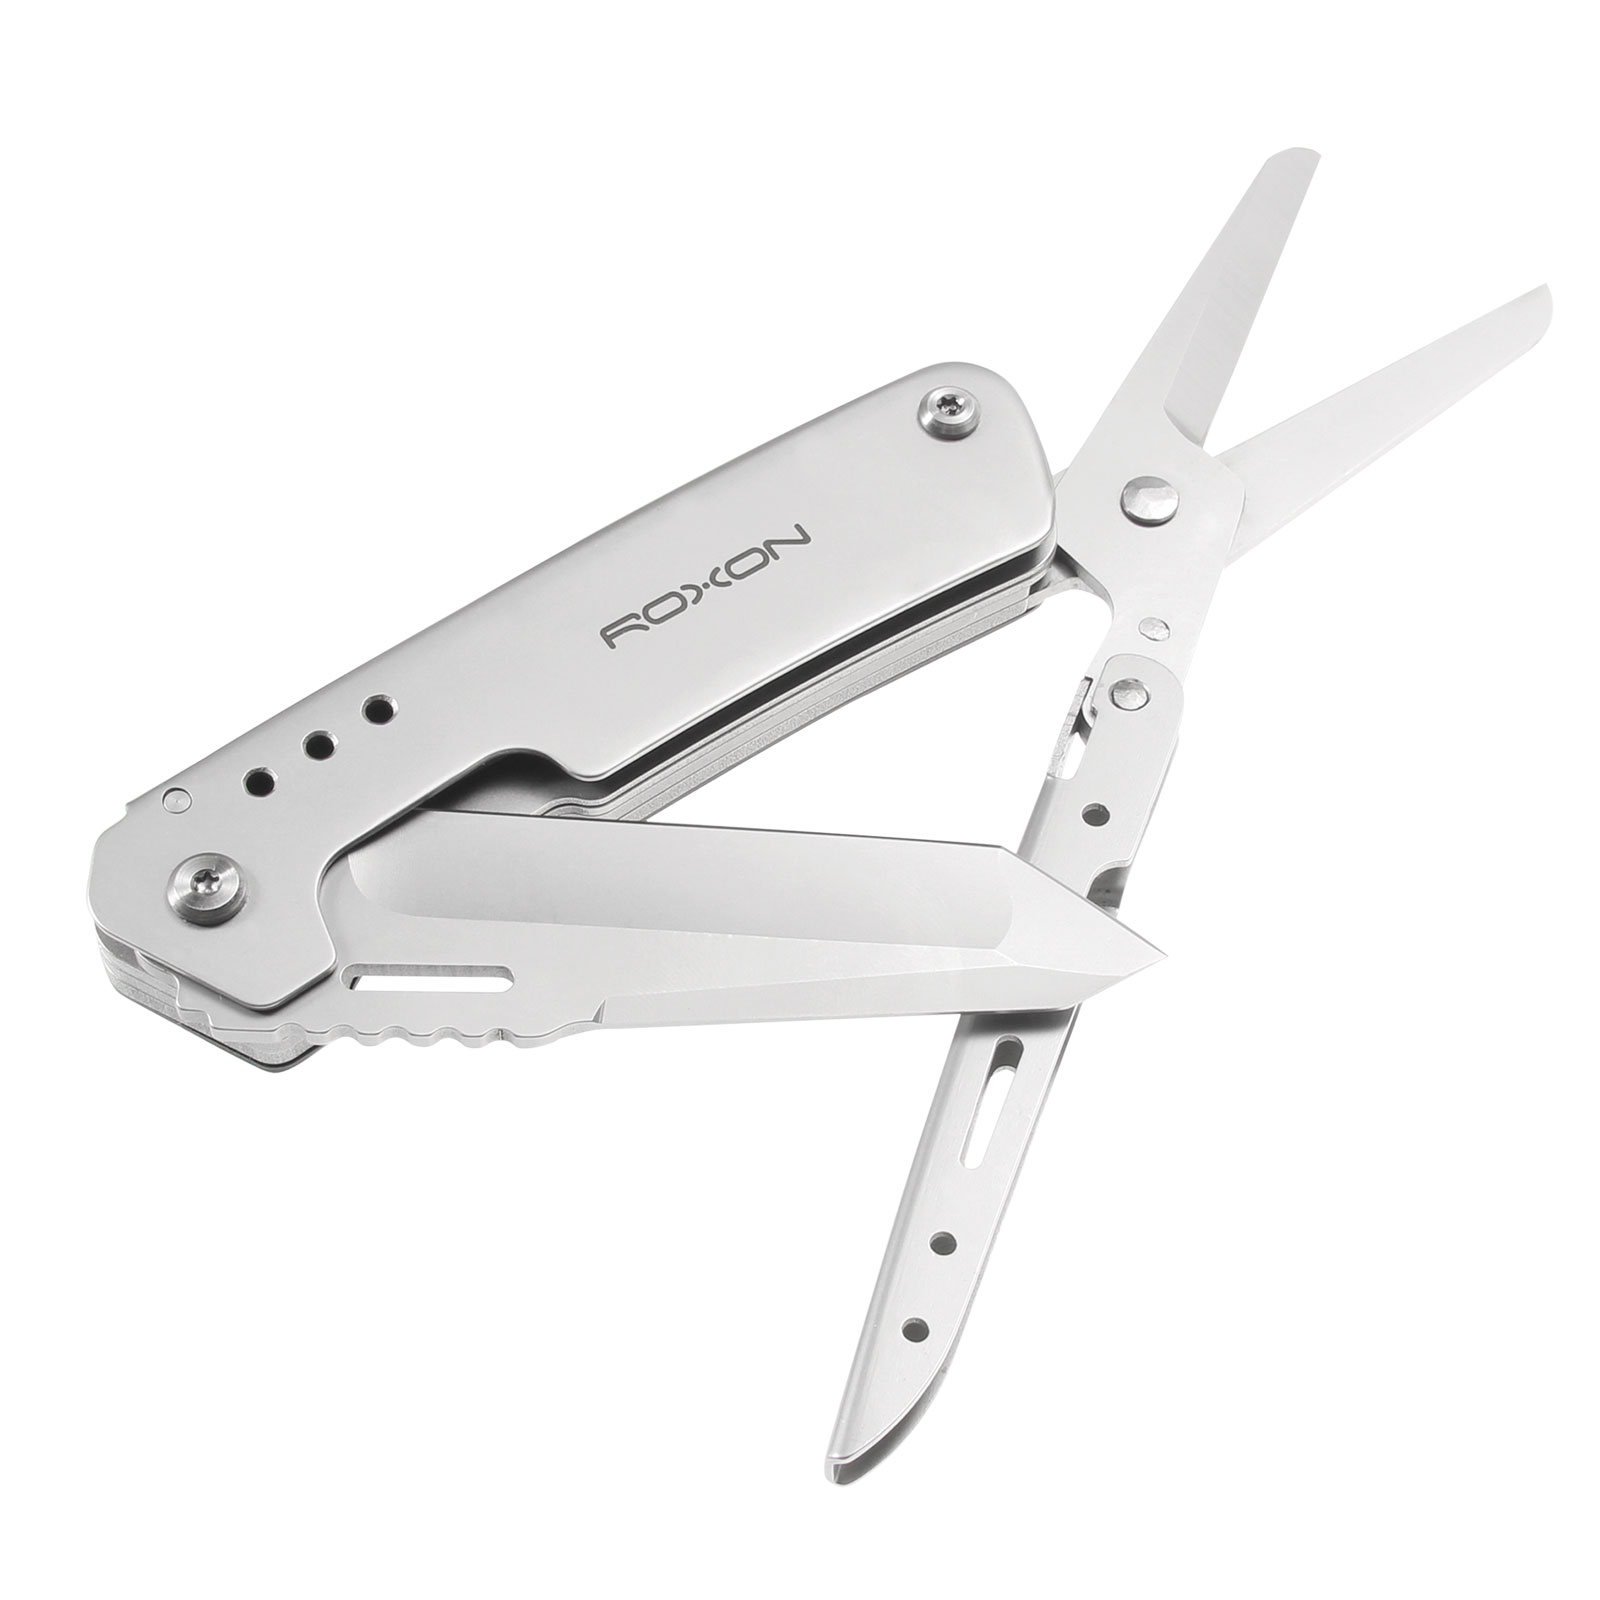 Couteau multifonction ROXON KS couteau ciseaux - Couteaux - AKAH